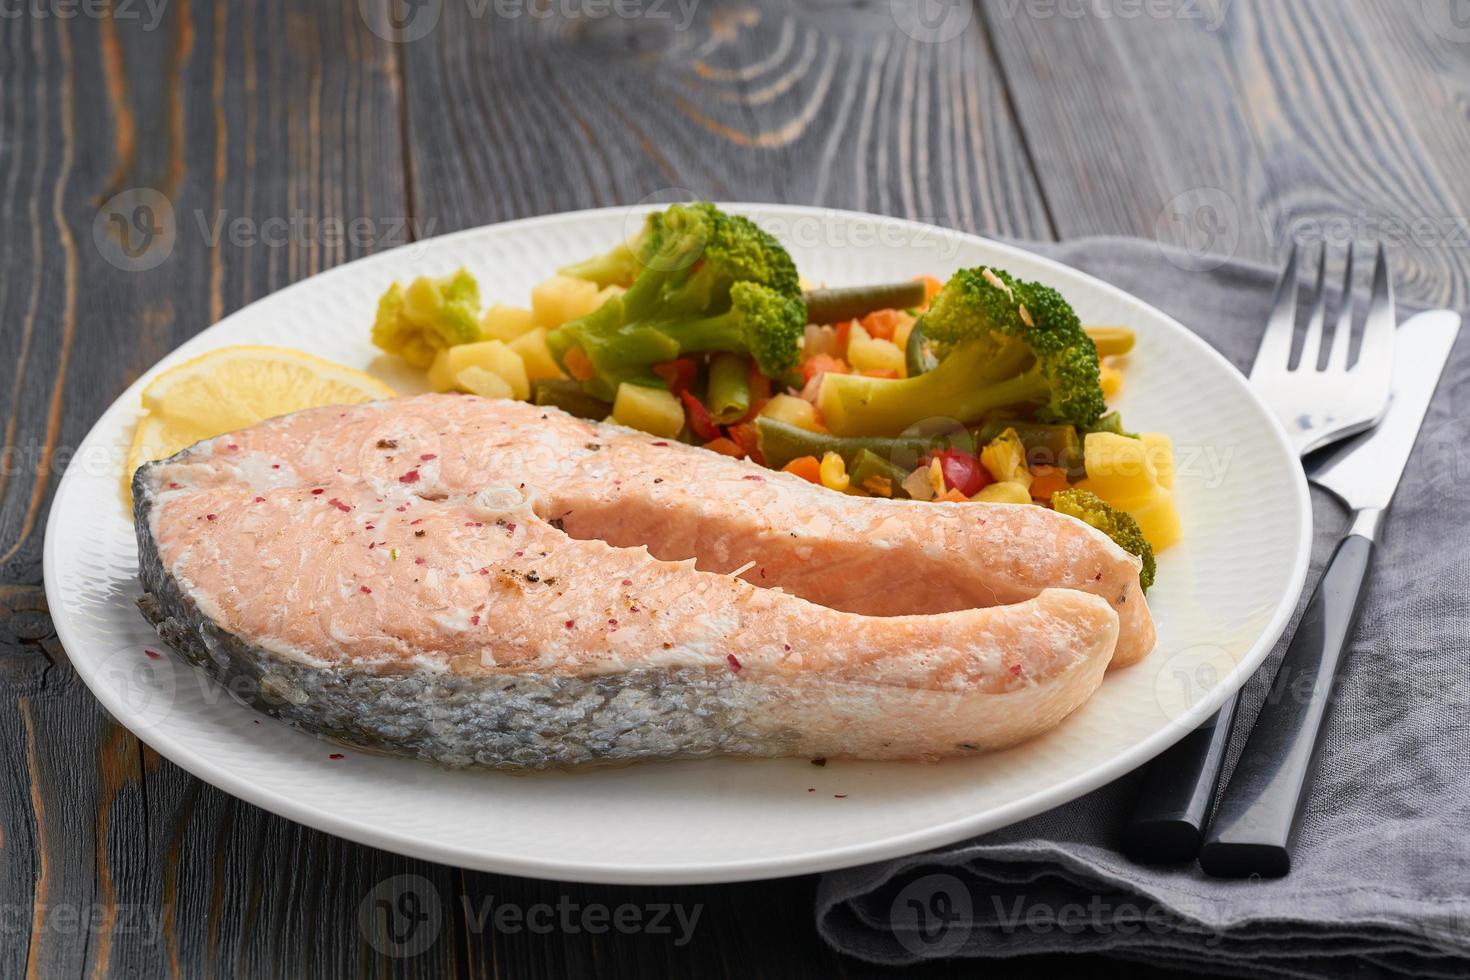 salmone e verdure al vapore, dieta sana. piatto bianco su tavola di legno rustica, vista laterale foto